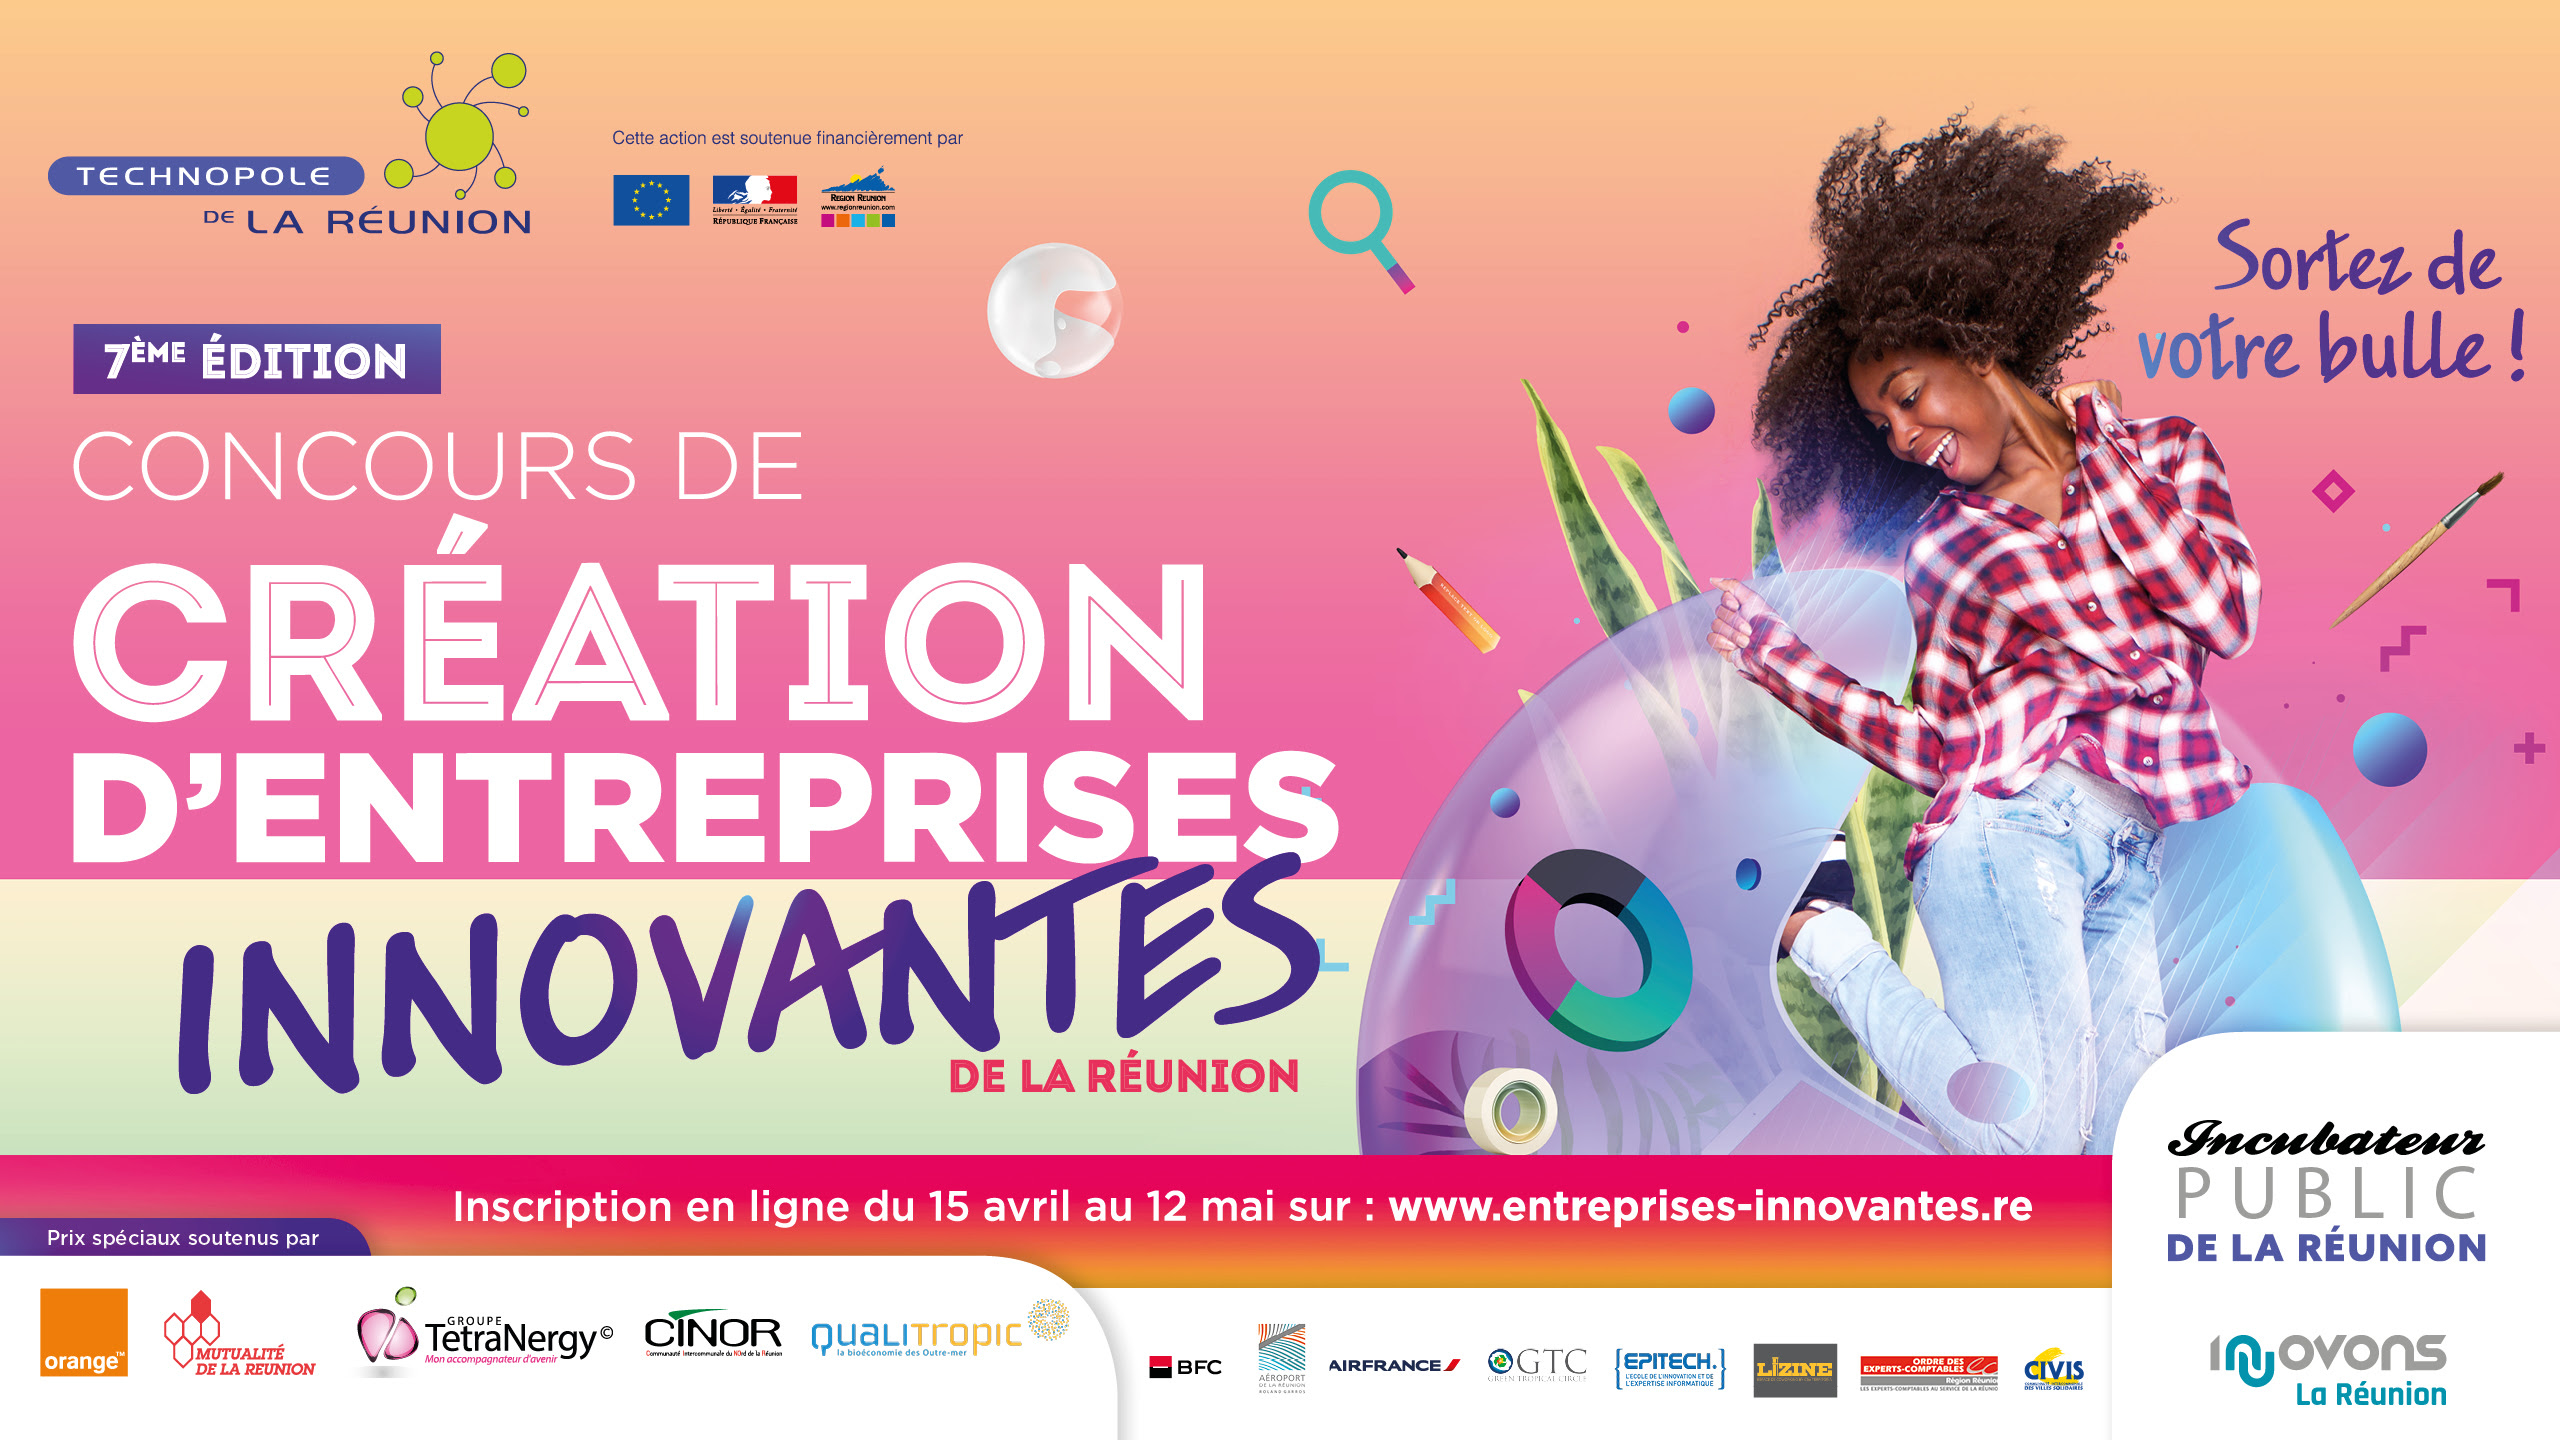 La Réunion : La Technopole lance sa 7ème édition du Concours de création d’entreprises innovantes